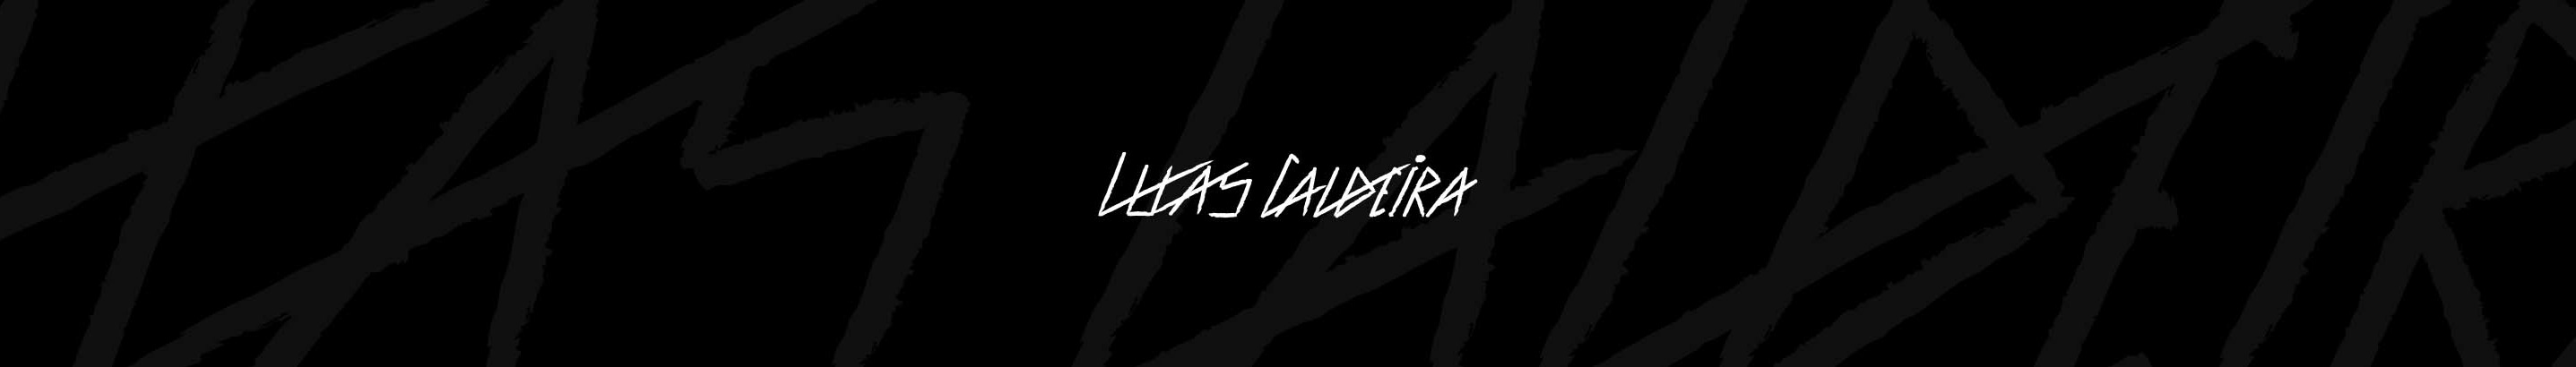 Lucas Caldeira's profile banner